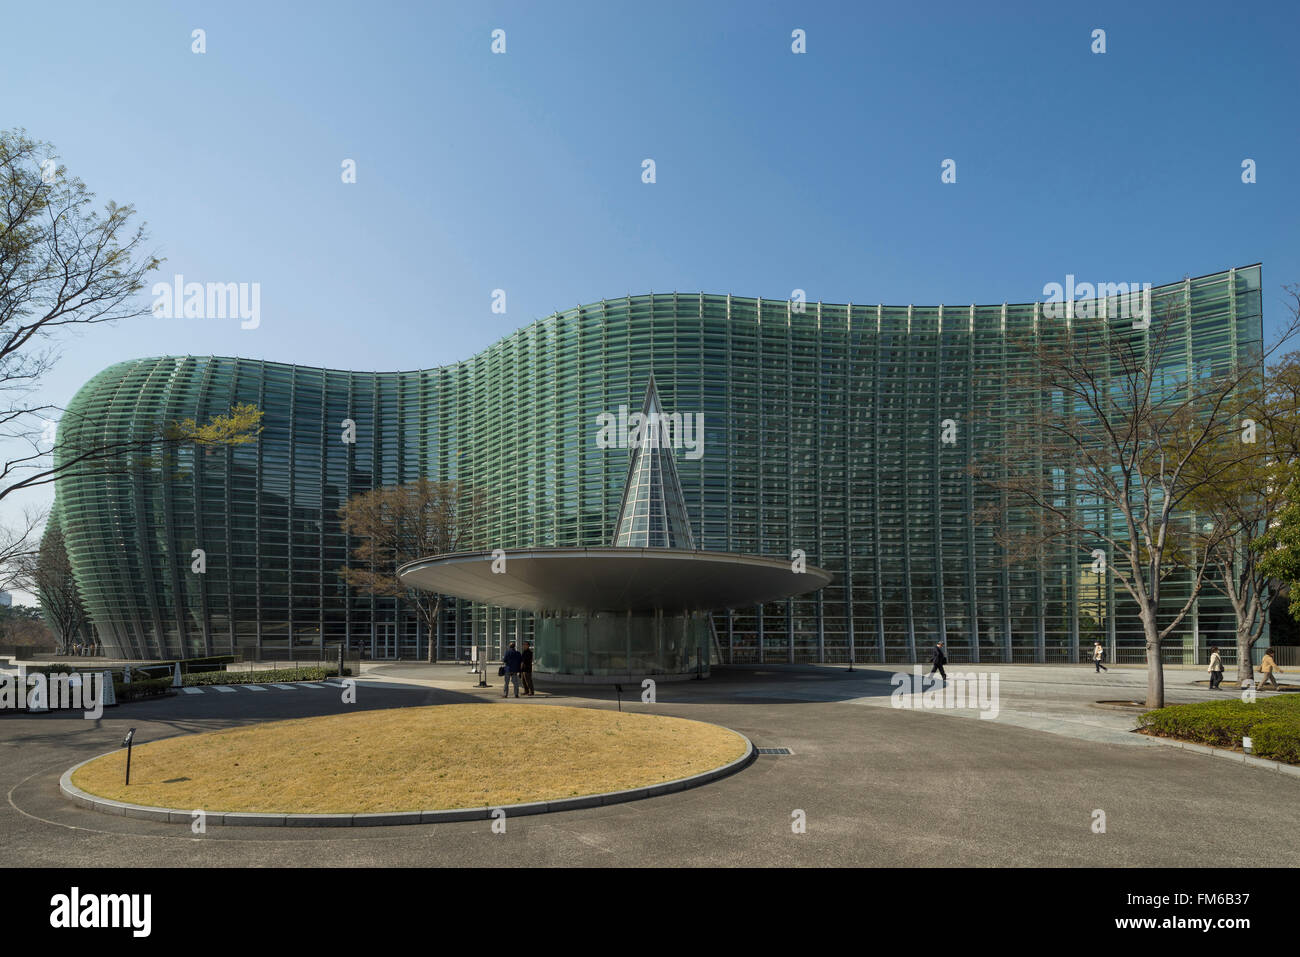 Un grand bâtiment de verre courbé, avec un œil en forme de disque de capture de l'auvent en acier à partir de laquelle un triangle de verre se lève, est l'entrée de Tokyo, du Centre national des Arts, avec des gens qui marchent sur les jardins paysagers. Banque D'Images